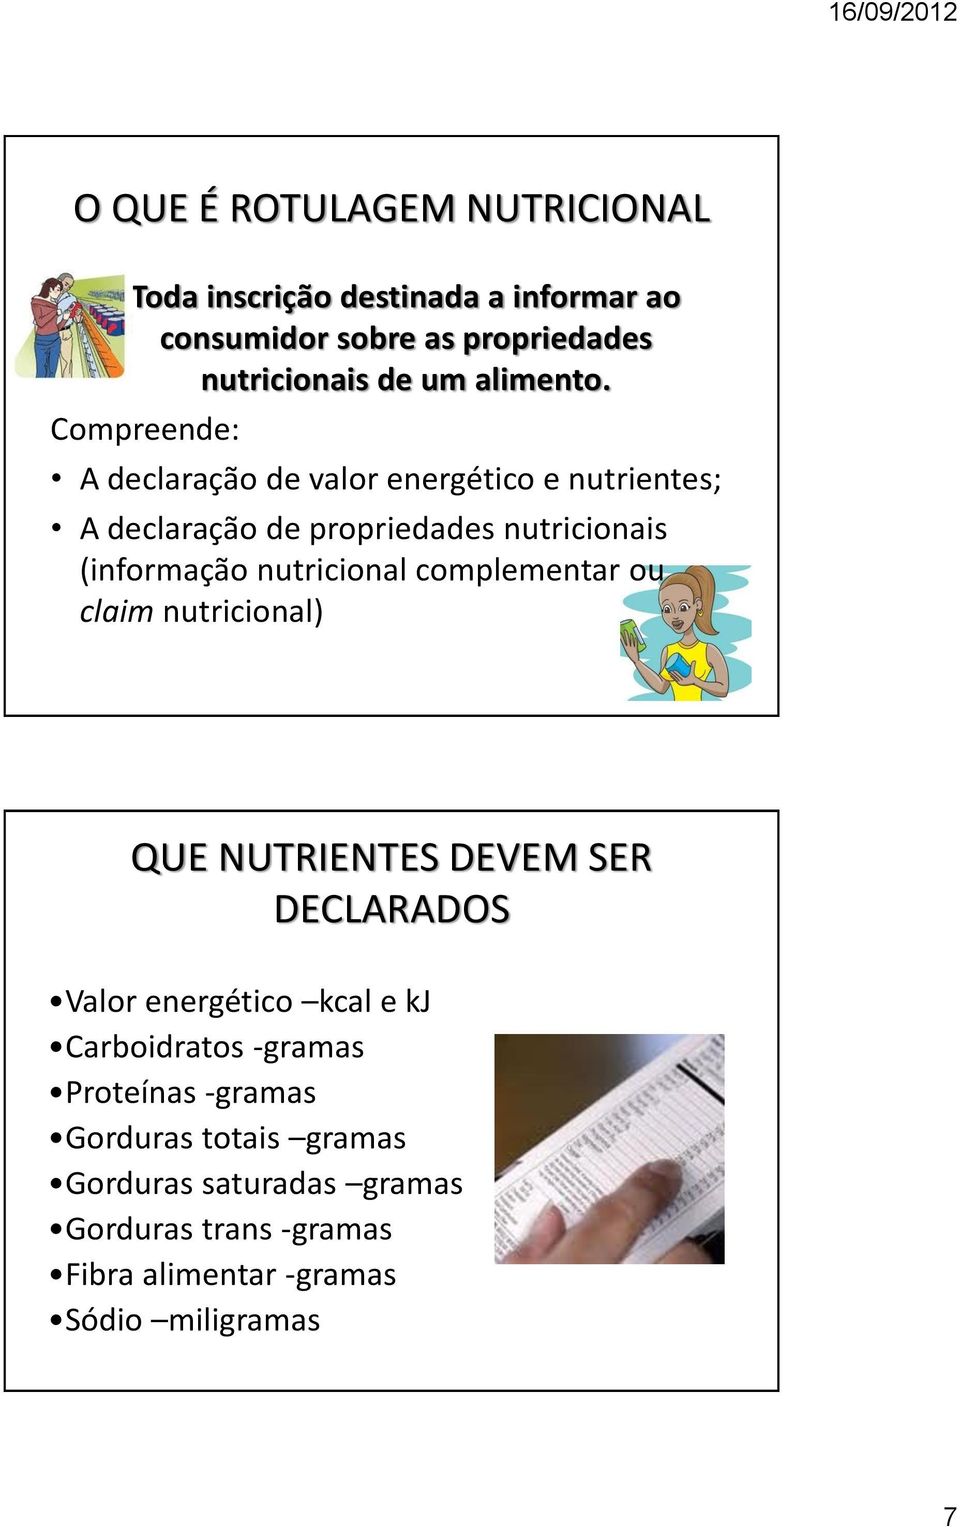 Compreende: A declaração de valor energético e nutrientes; A declaração de propriedades nutricionais (informação nutricional